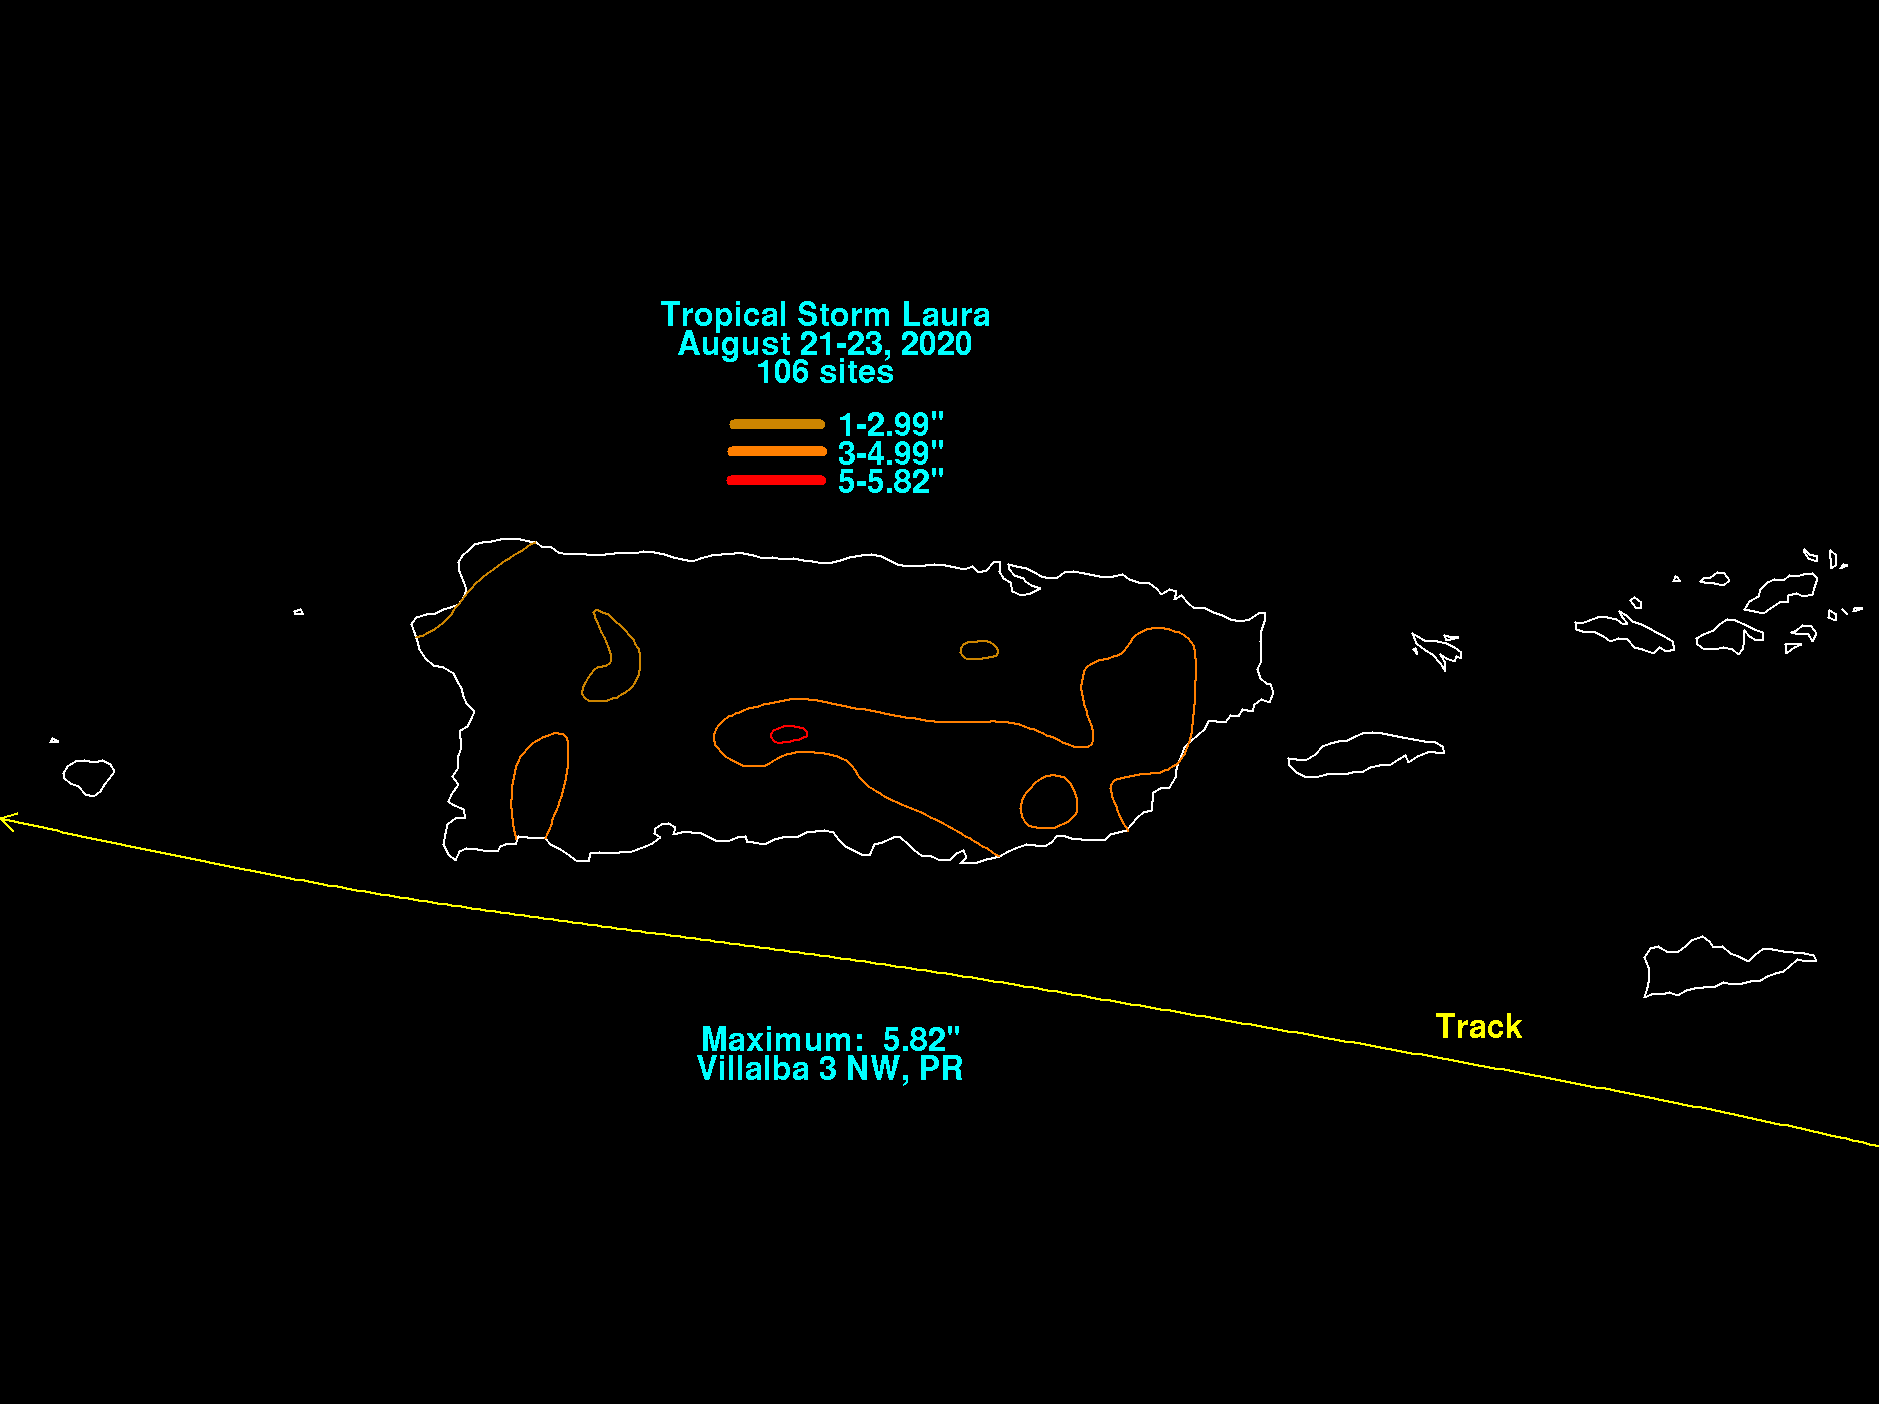 Hurricane Laura (2020) Rainfall